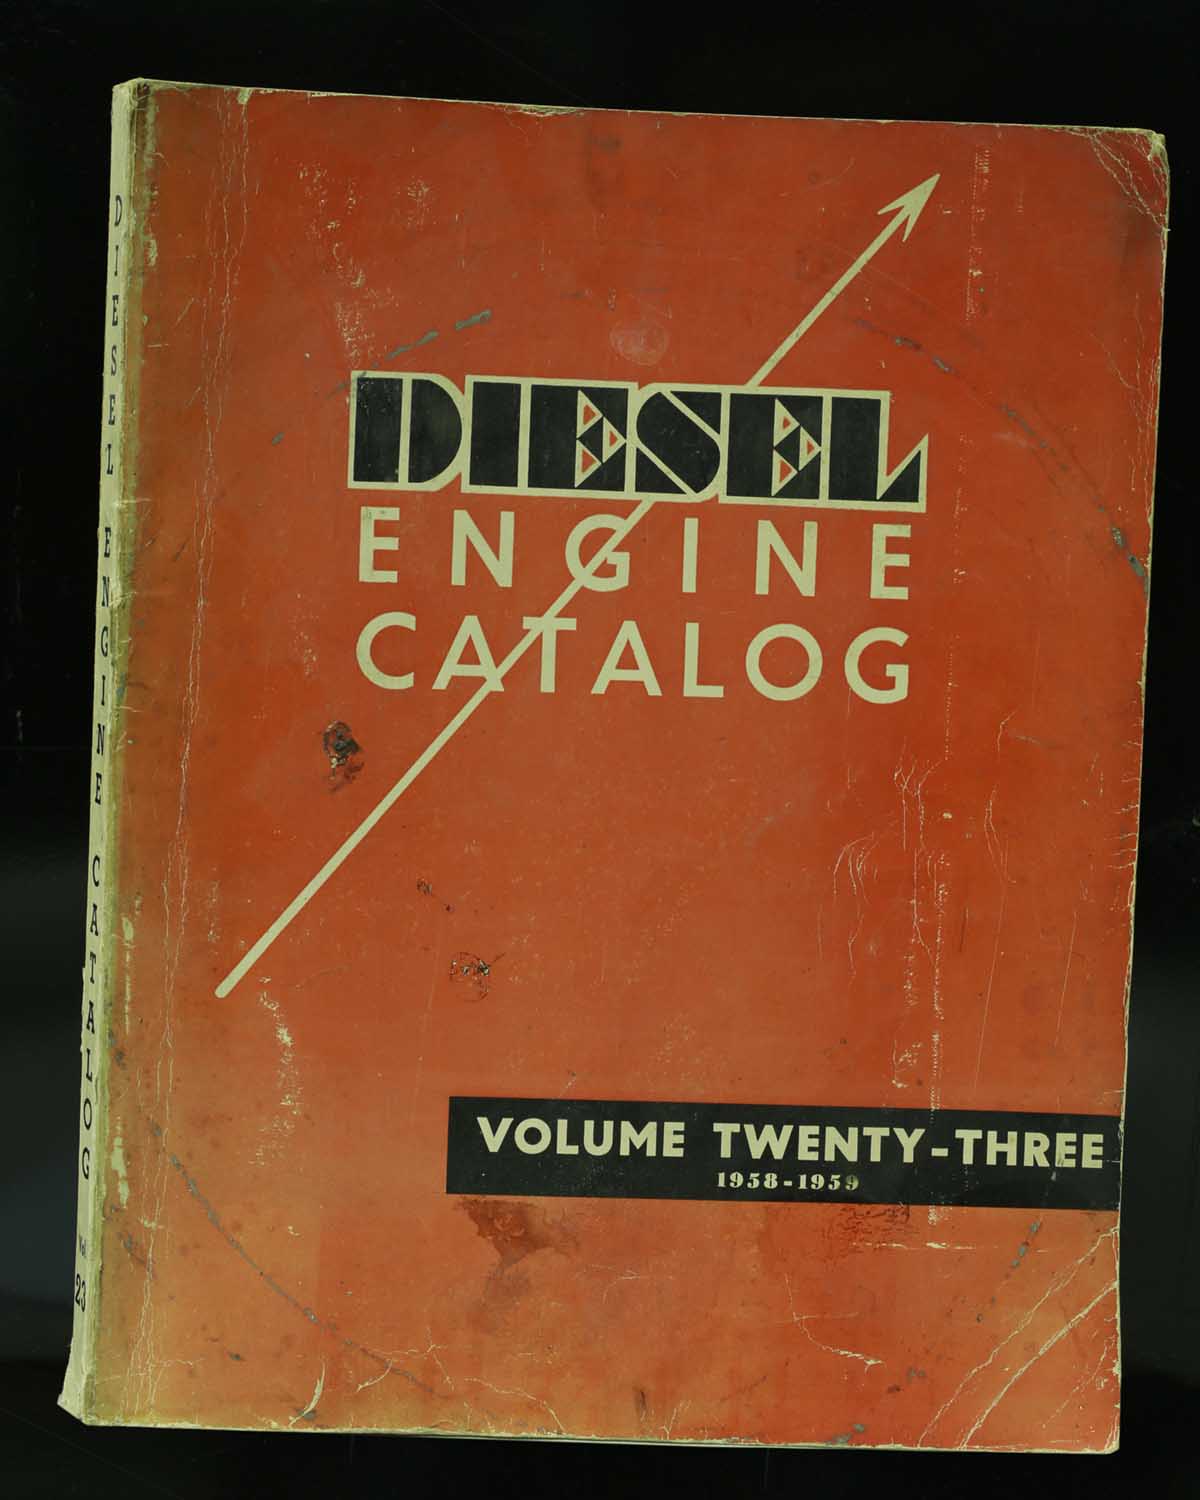 Diesel Engine Catalog, Volume 23, 1958-1959